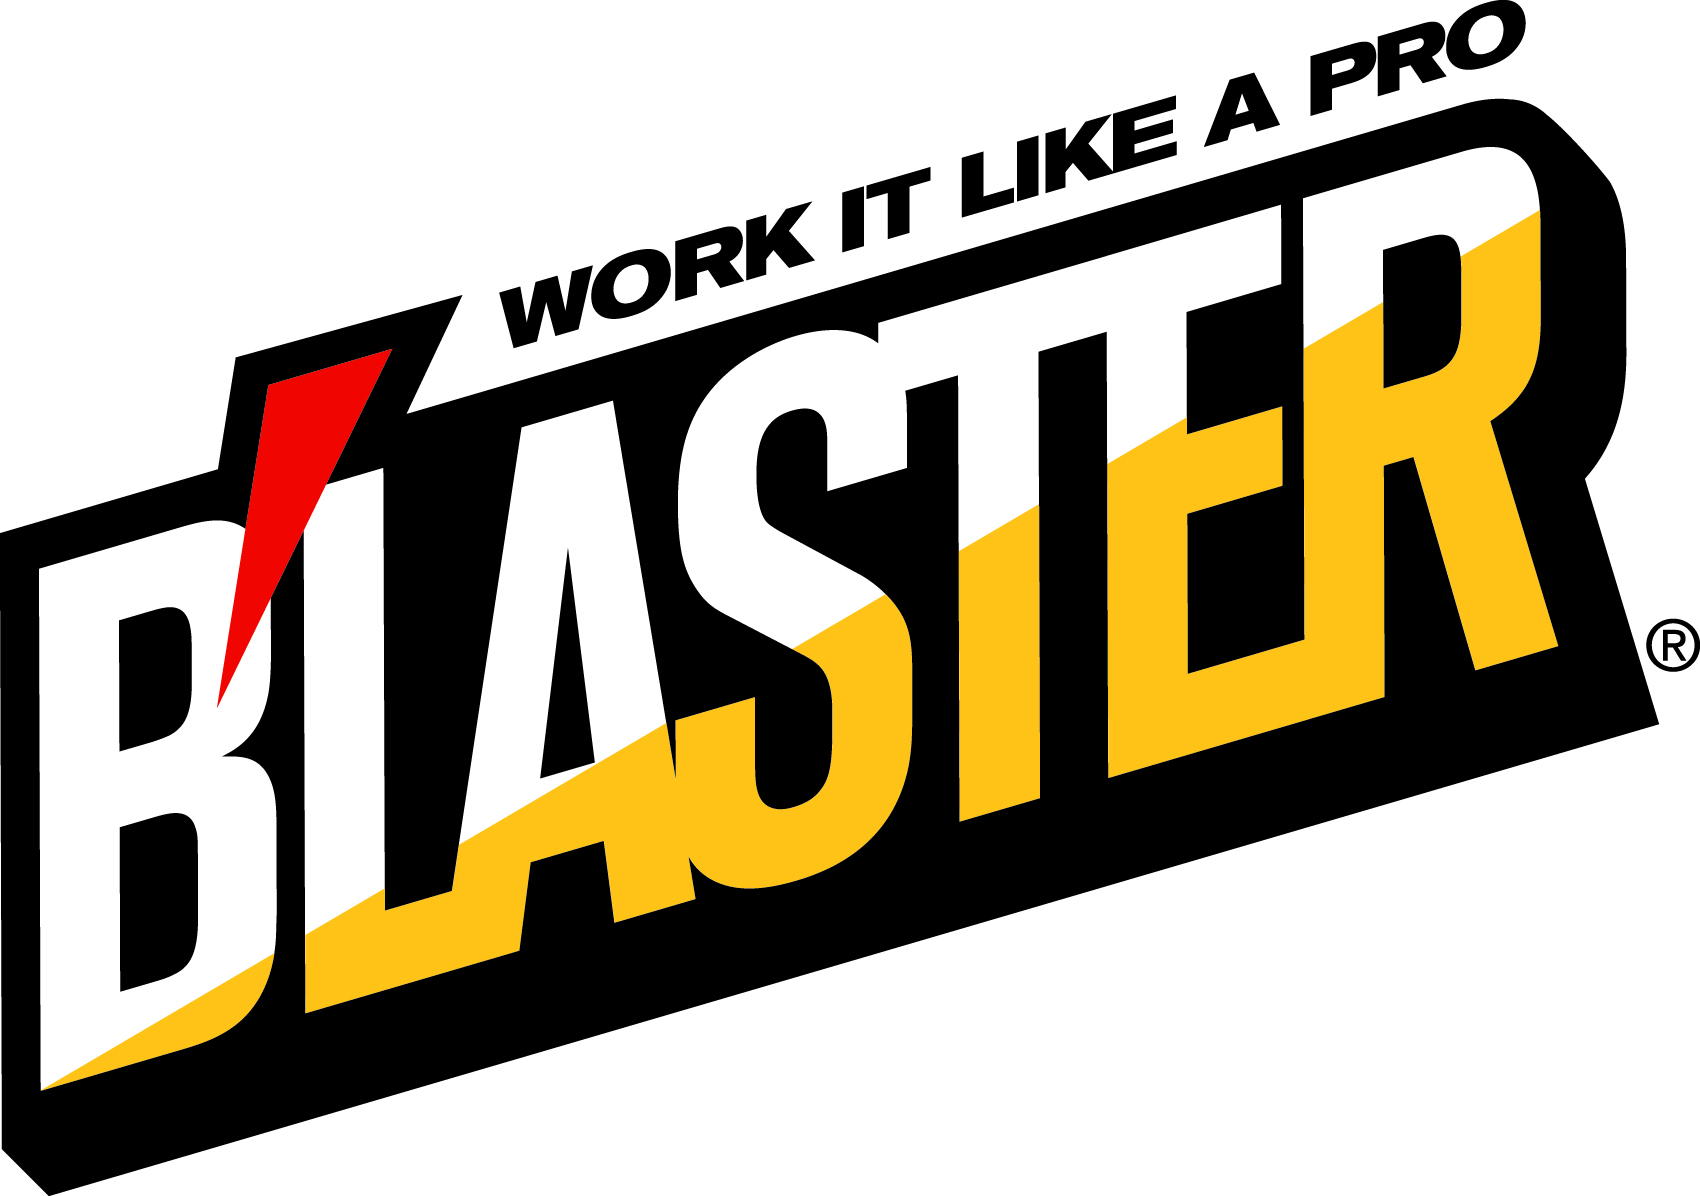 NEW_blaster_logo.jpg